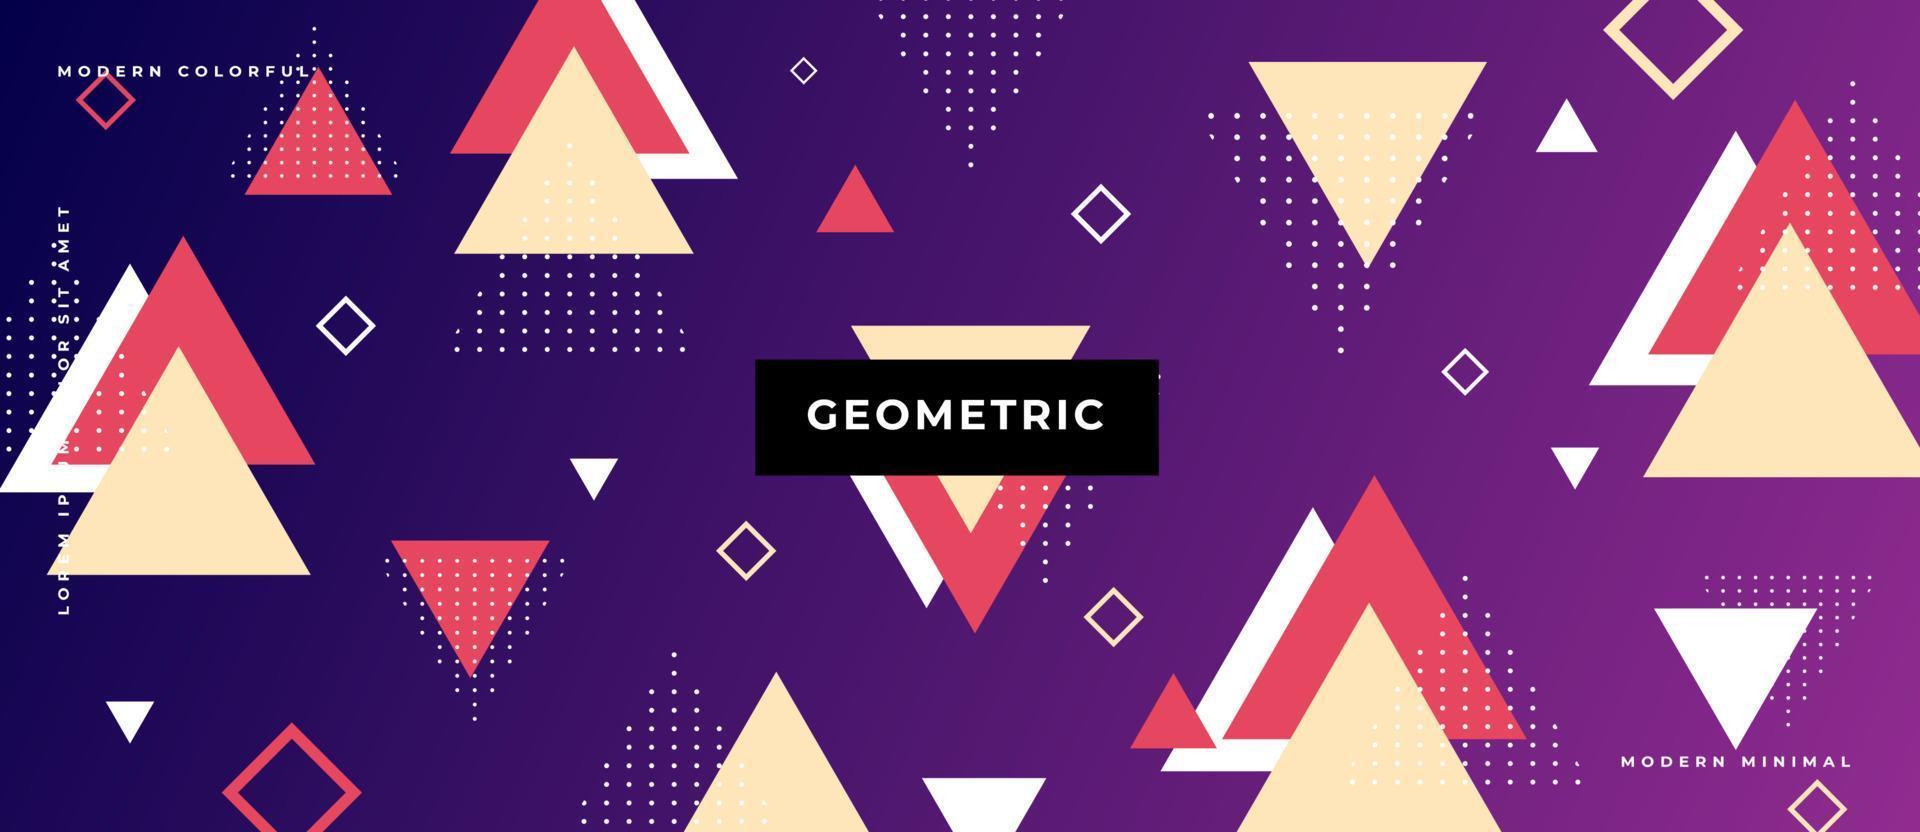 fundo do teste padrão do triângulo geométrico com arte abstrata da cor da forma em movimento e fundo gradiente da geometria suíça. vetor